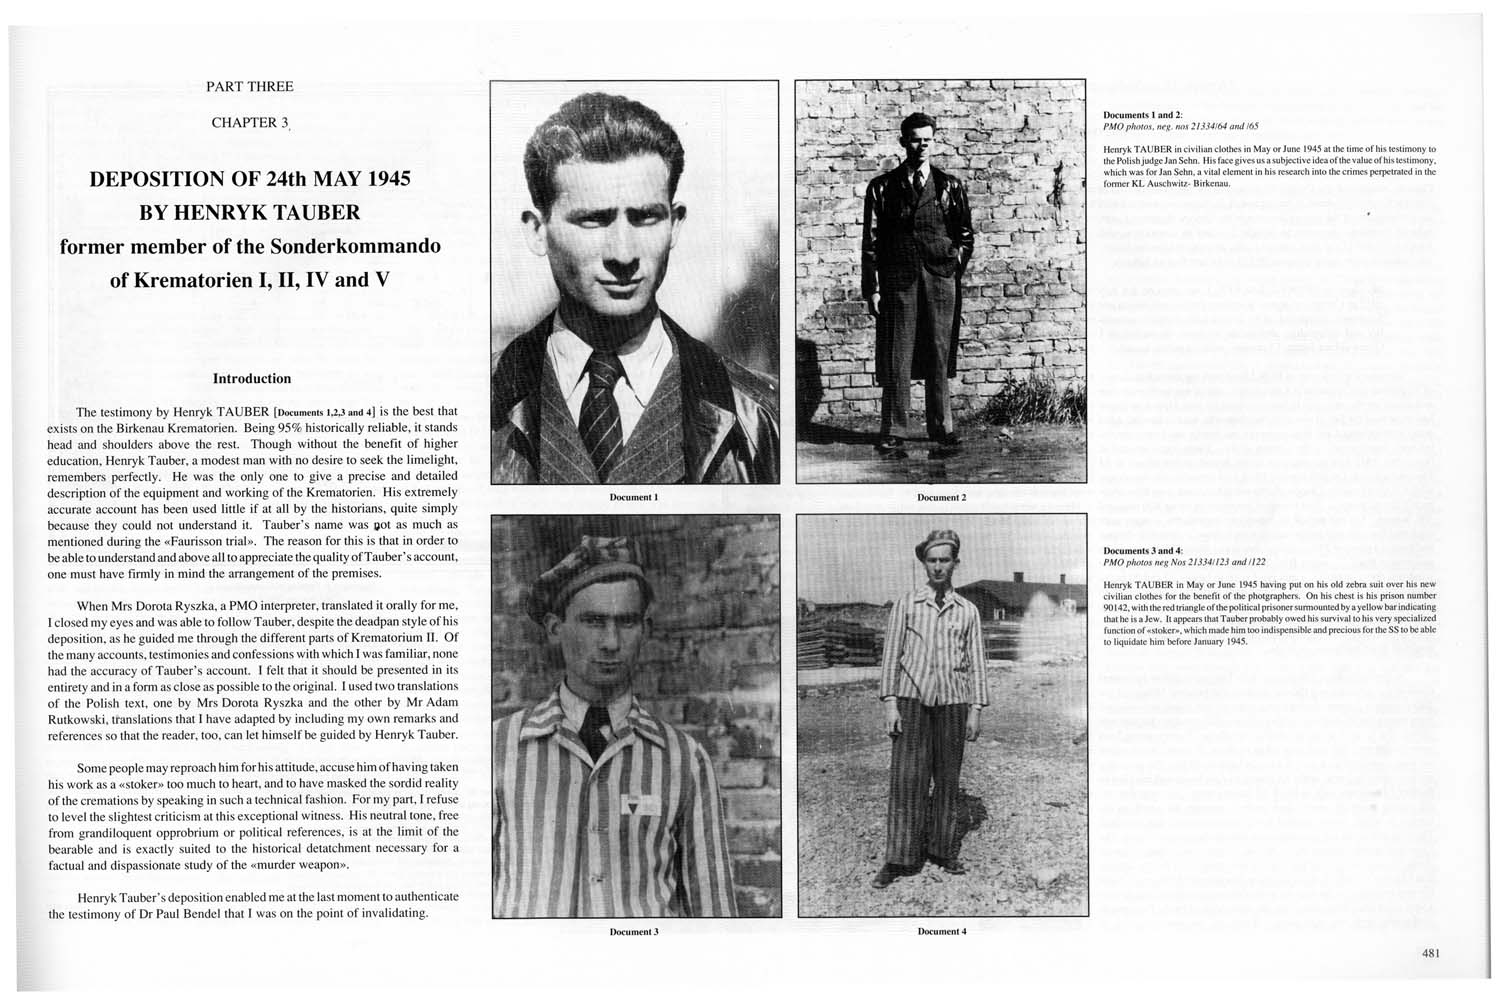 Auschwitz, by J.-C. Pressac